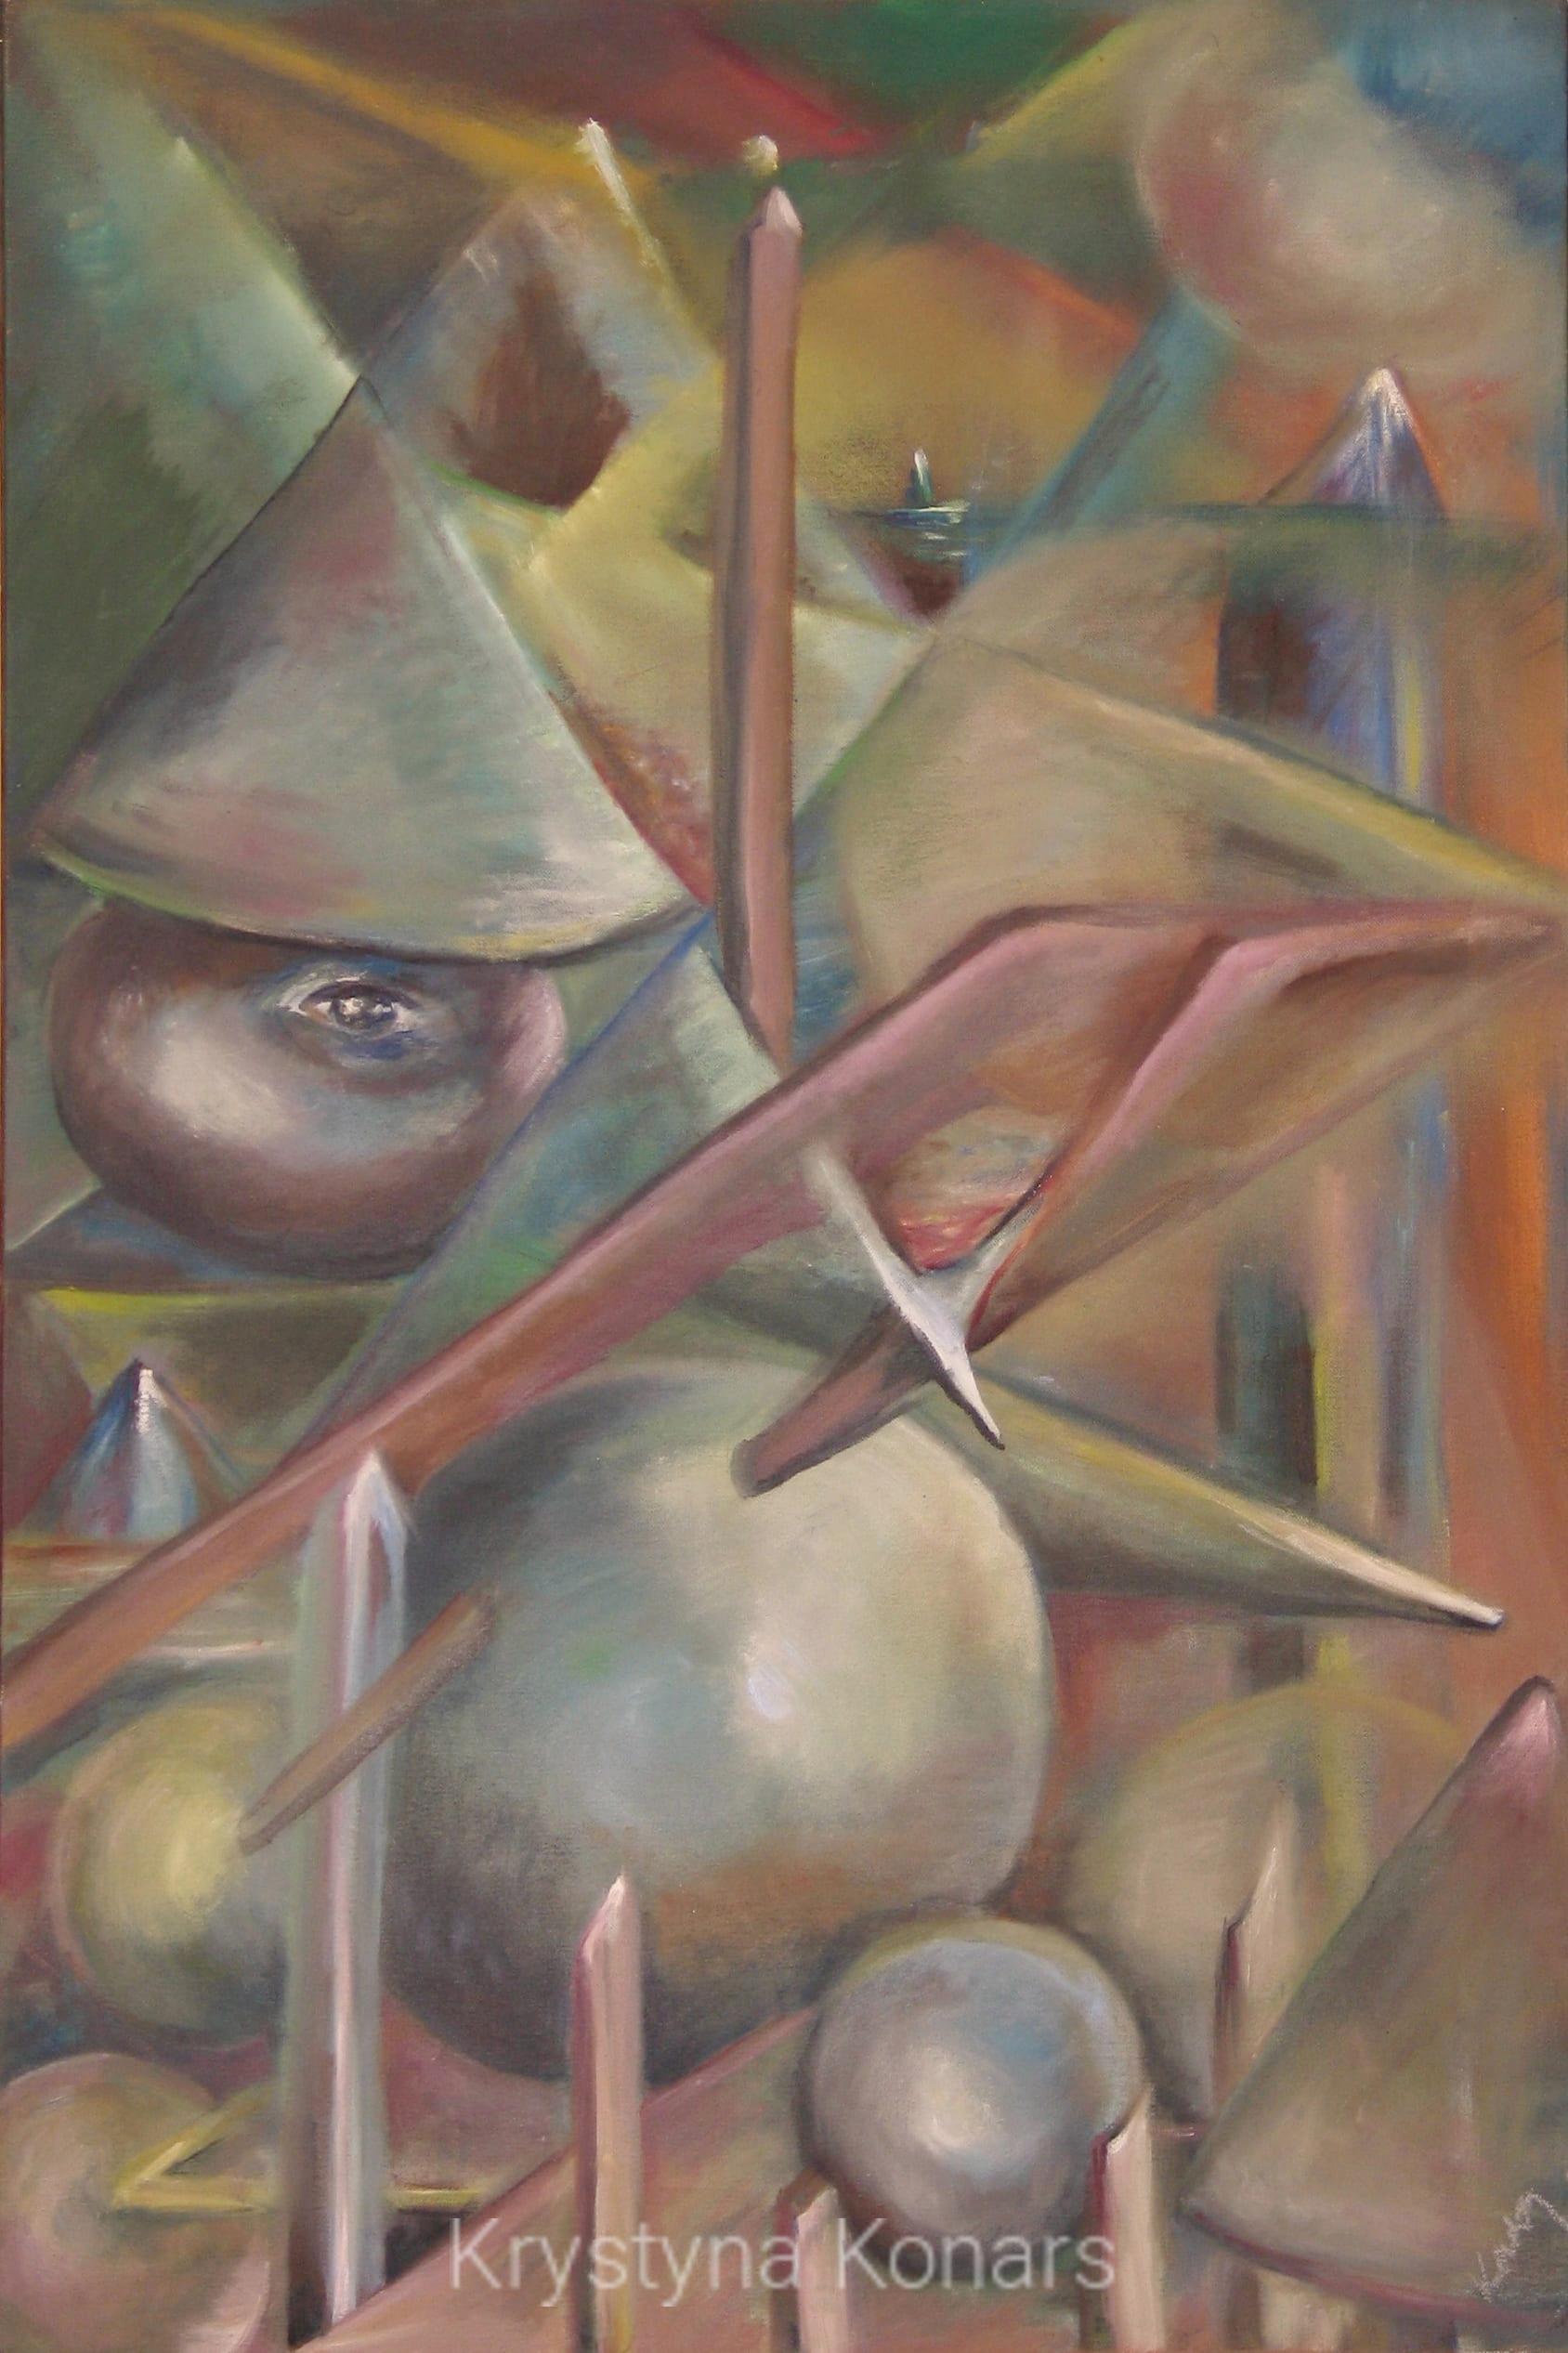 Krystyna Konars Painting